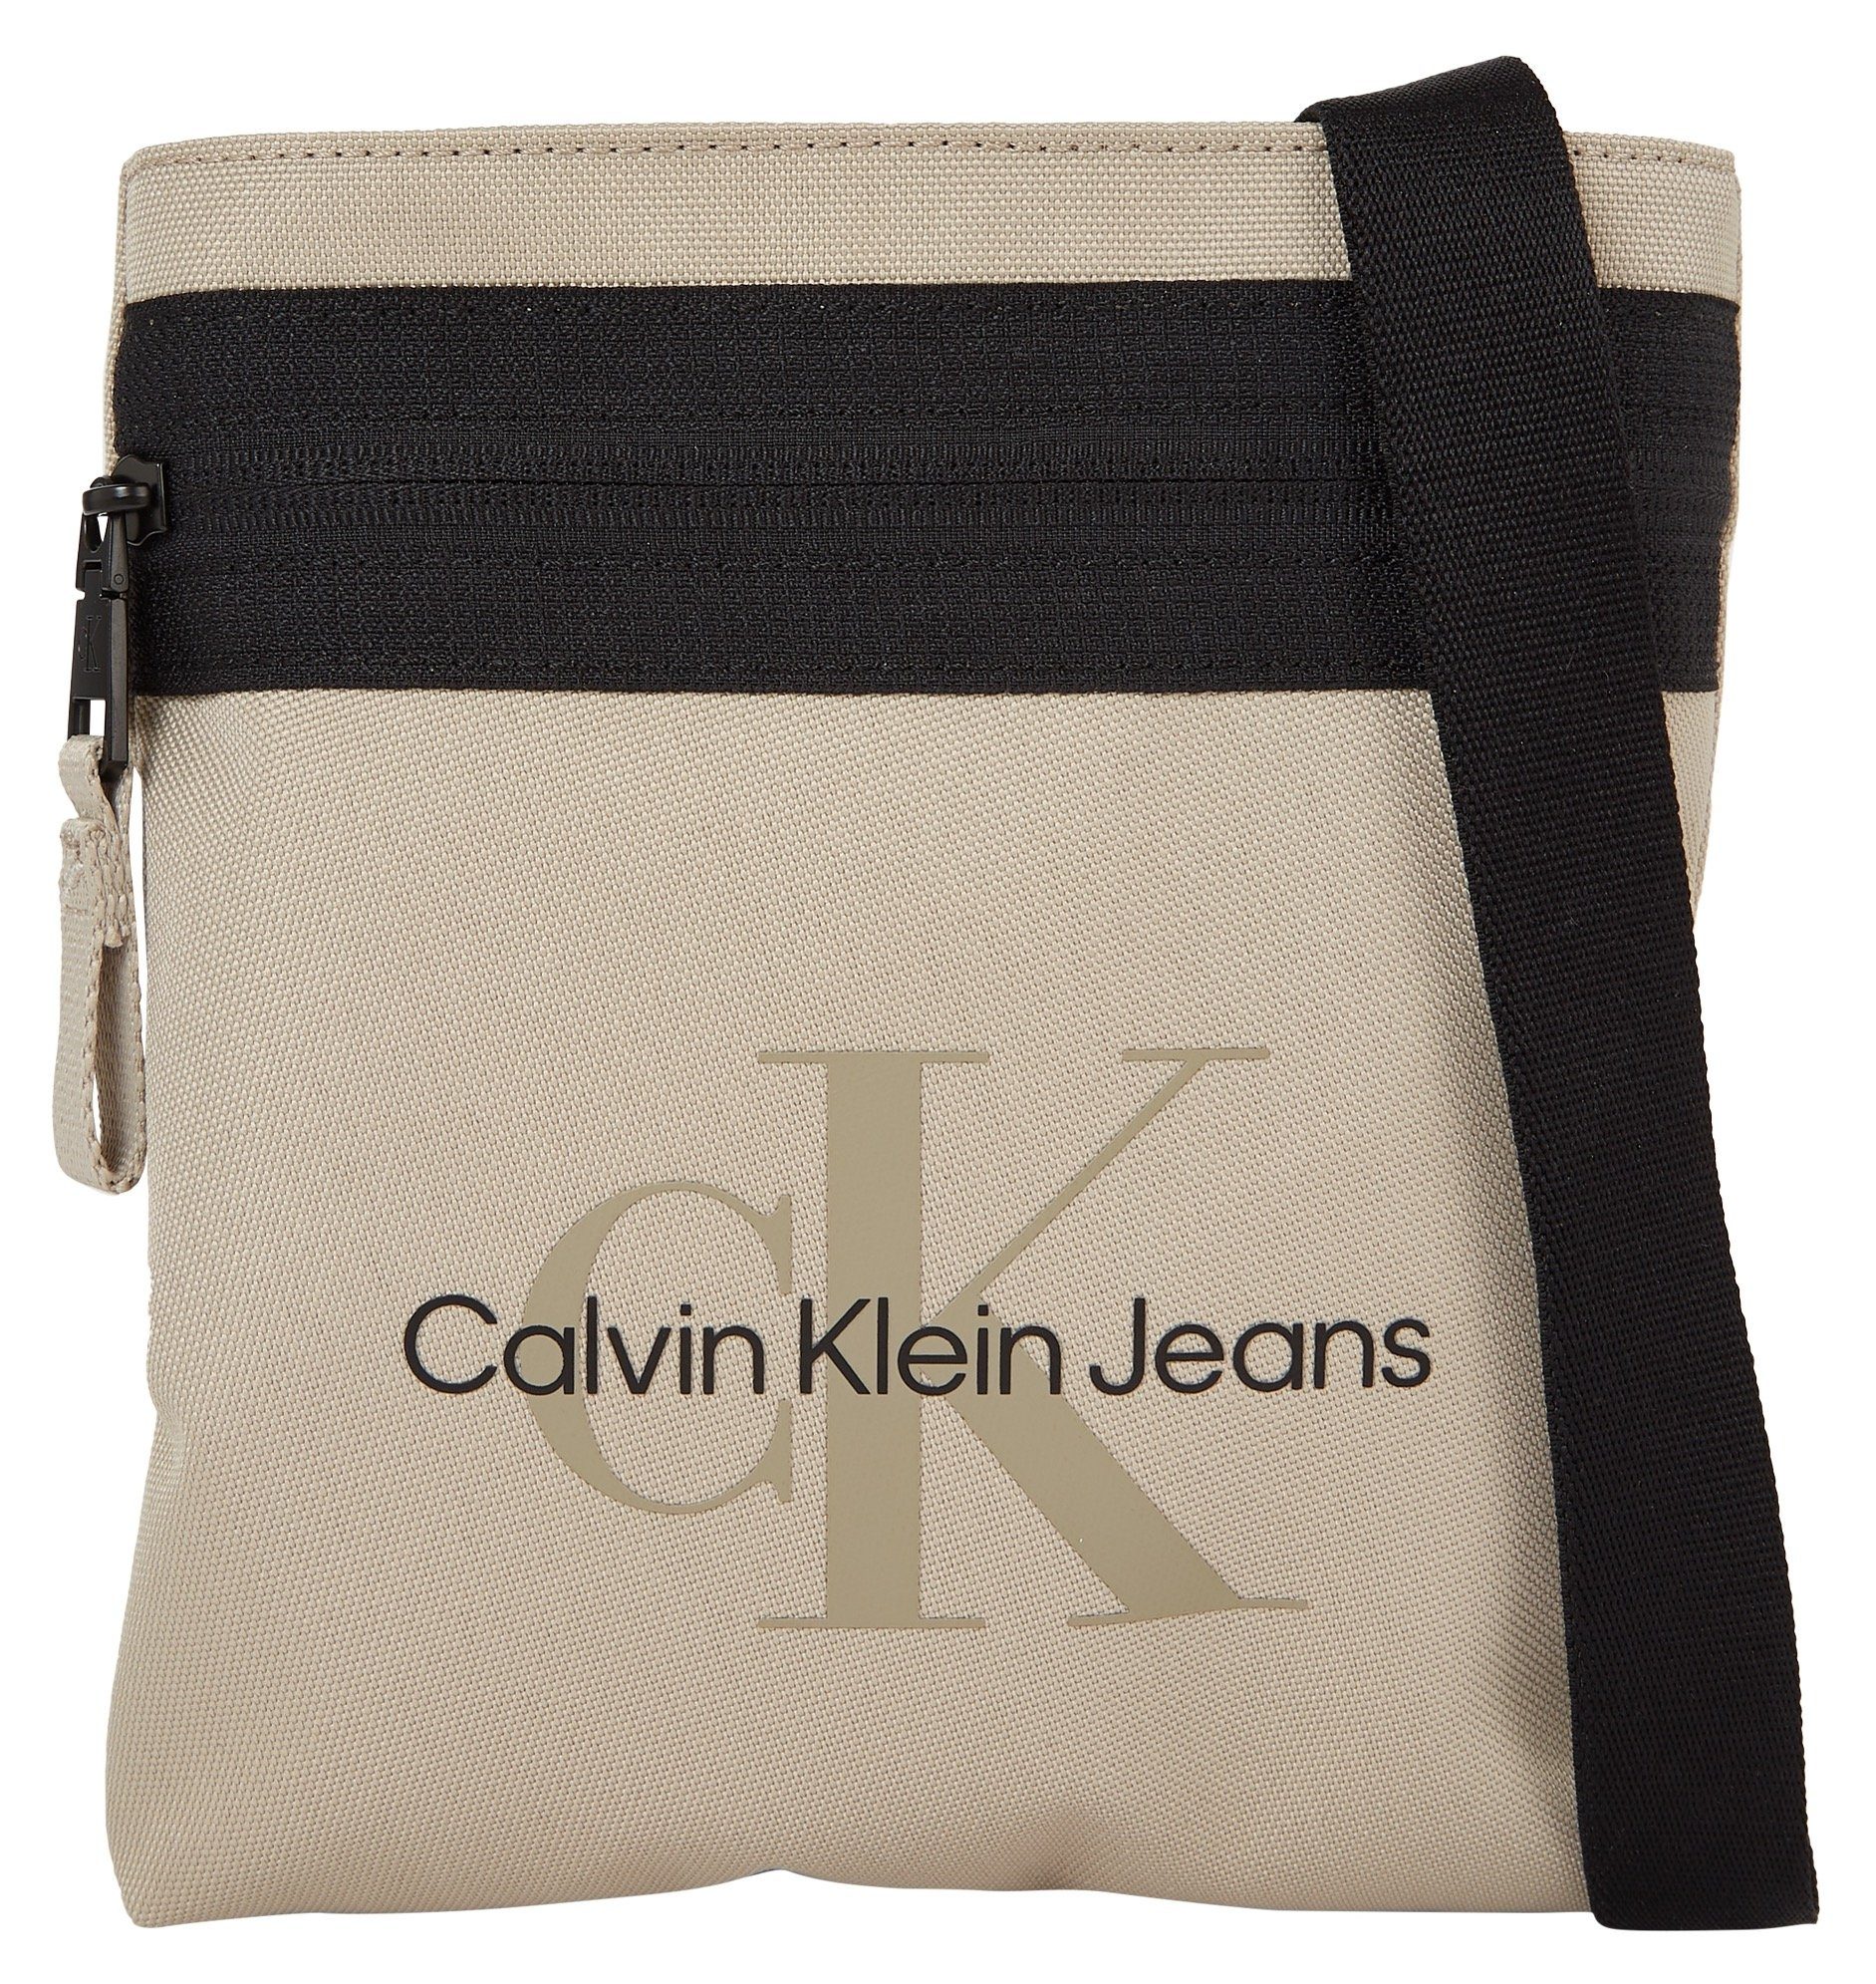 Calvin Klein Jeans Mini FLATPACK18 M, SPORT Bag Umhängetasche ESSENTIALS kleine